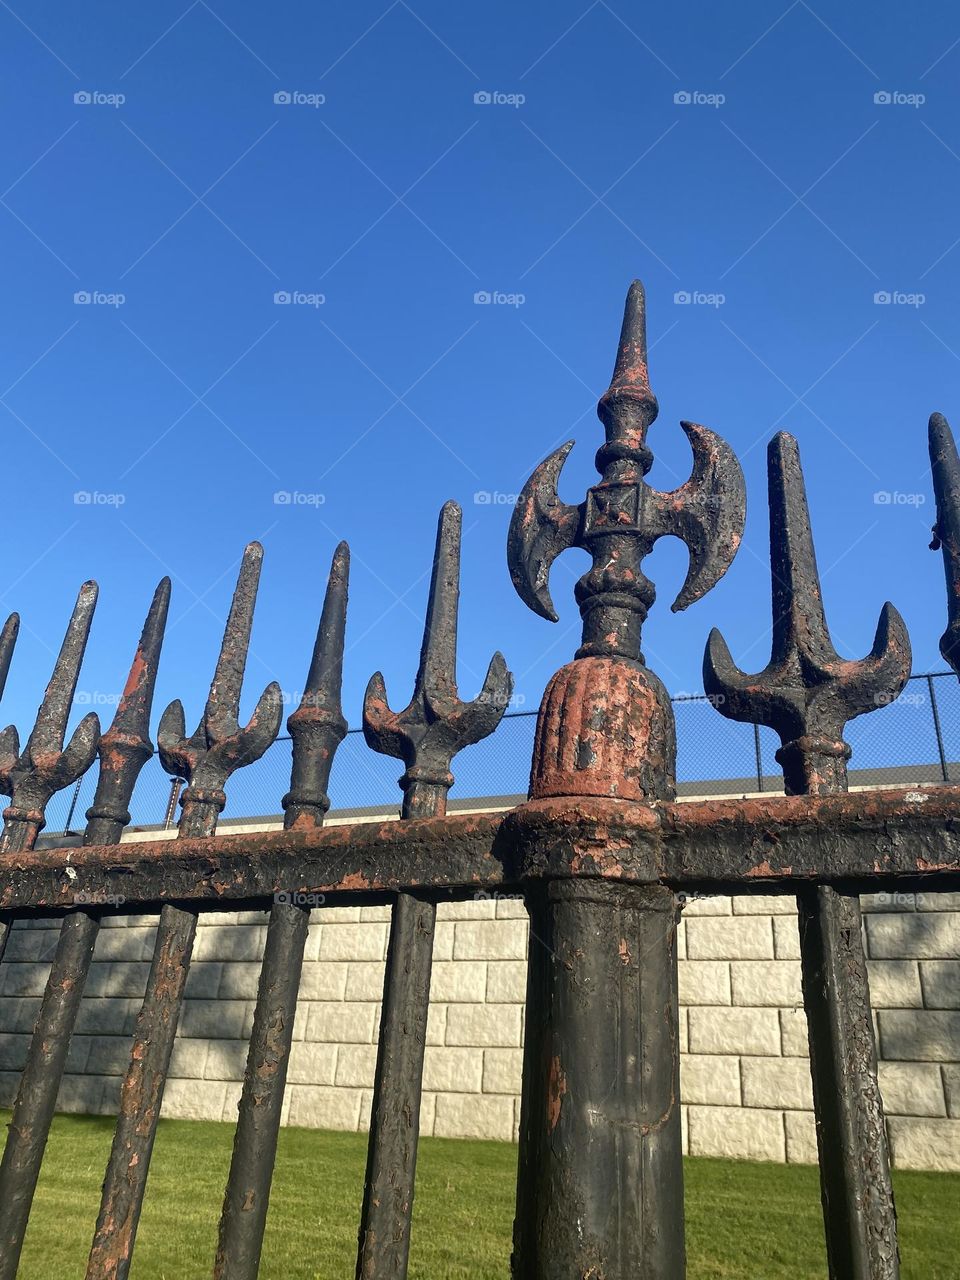 Iron rust gate